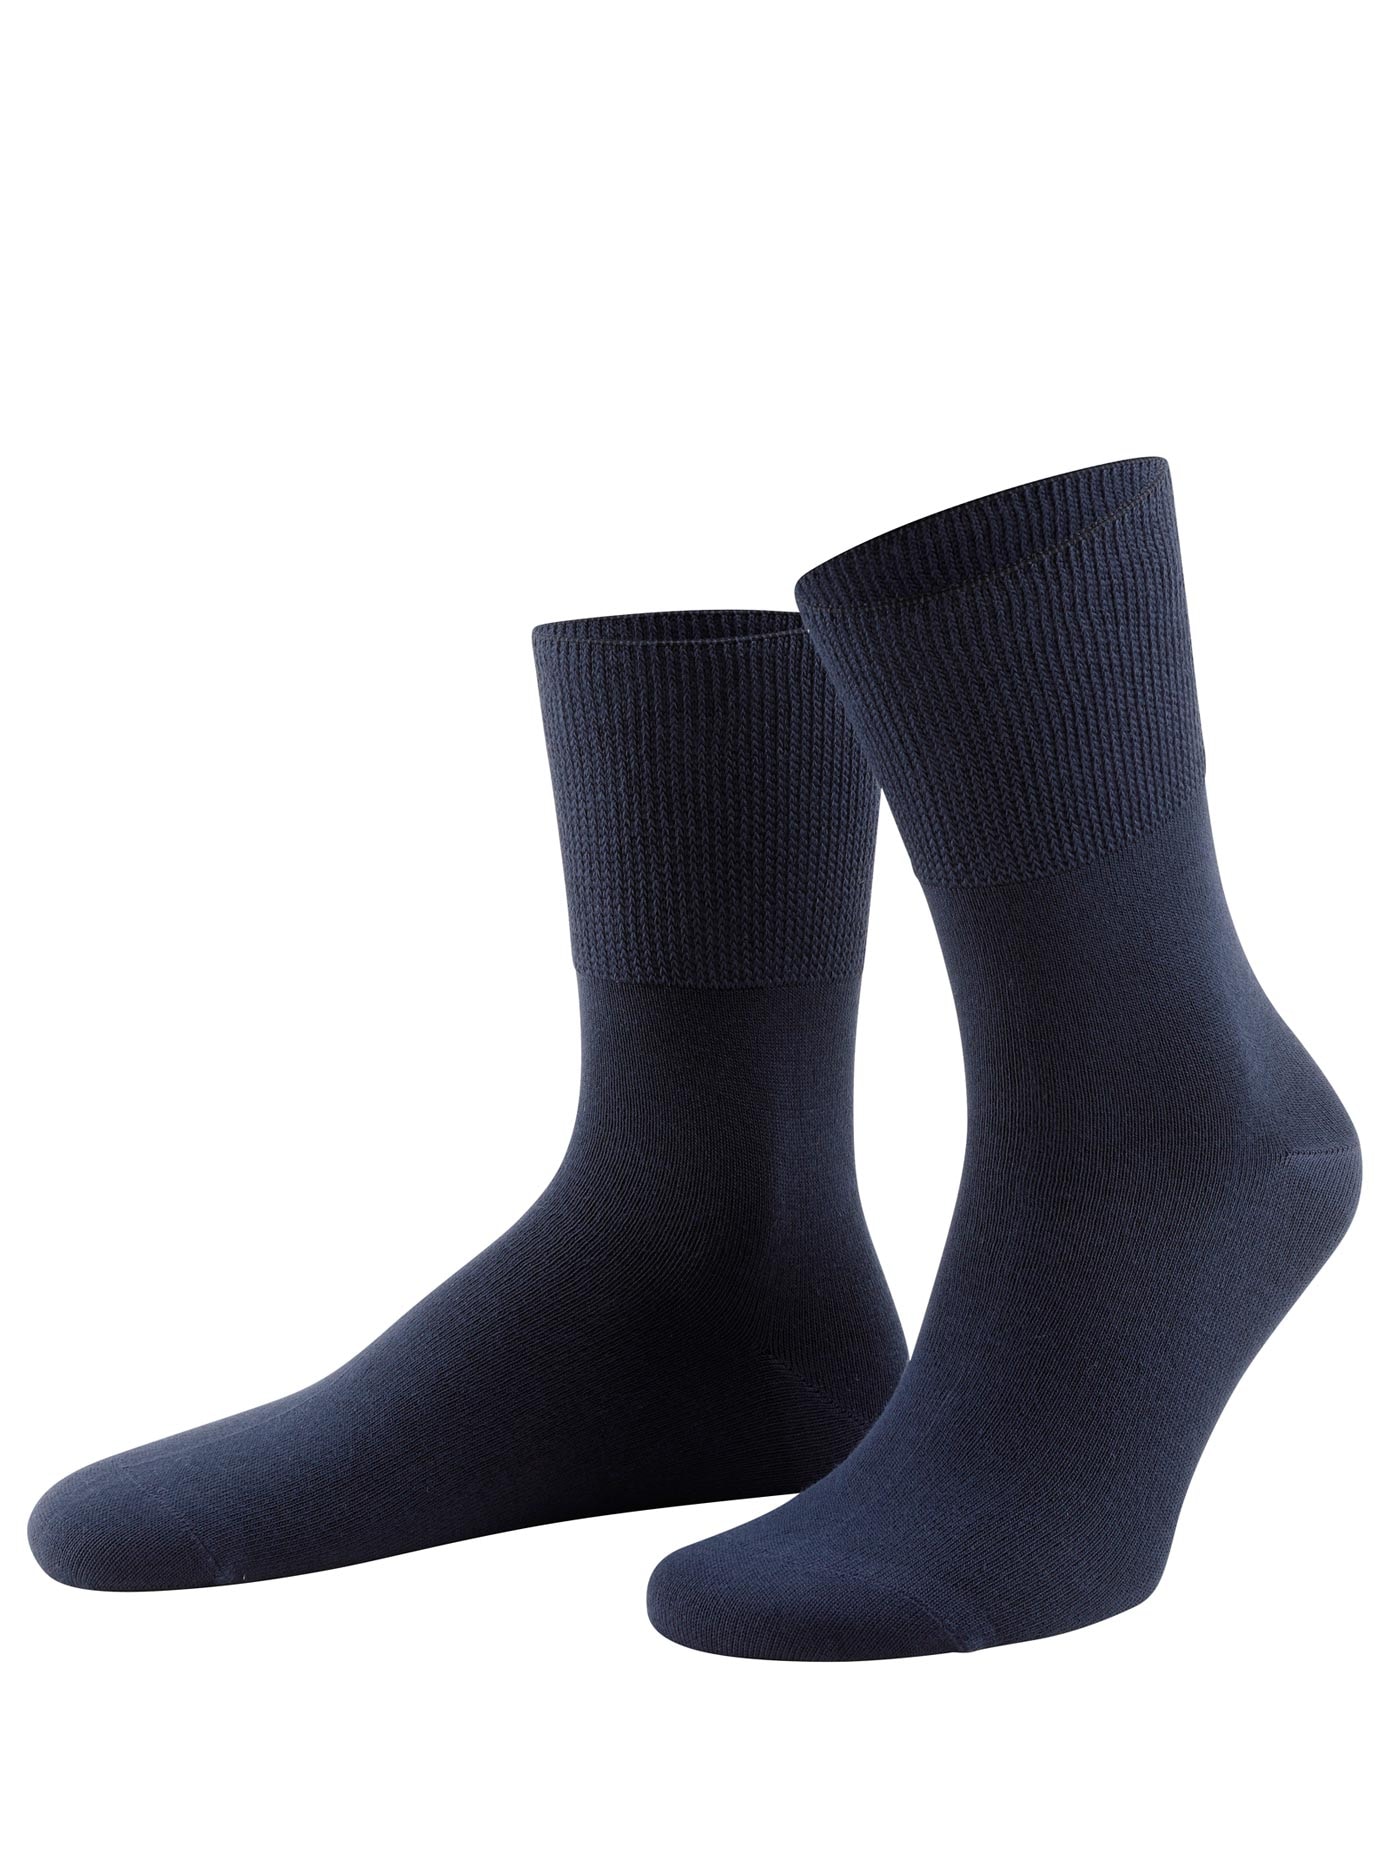 wäschepur Socken, Paar) bei (4 OTTOversand